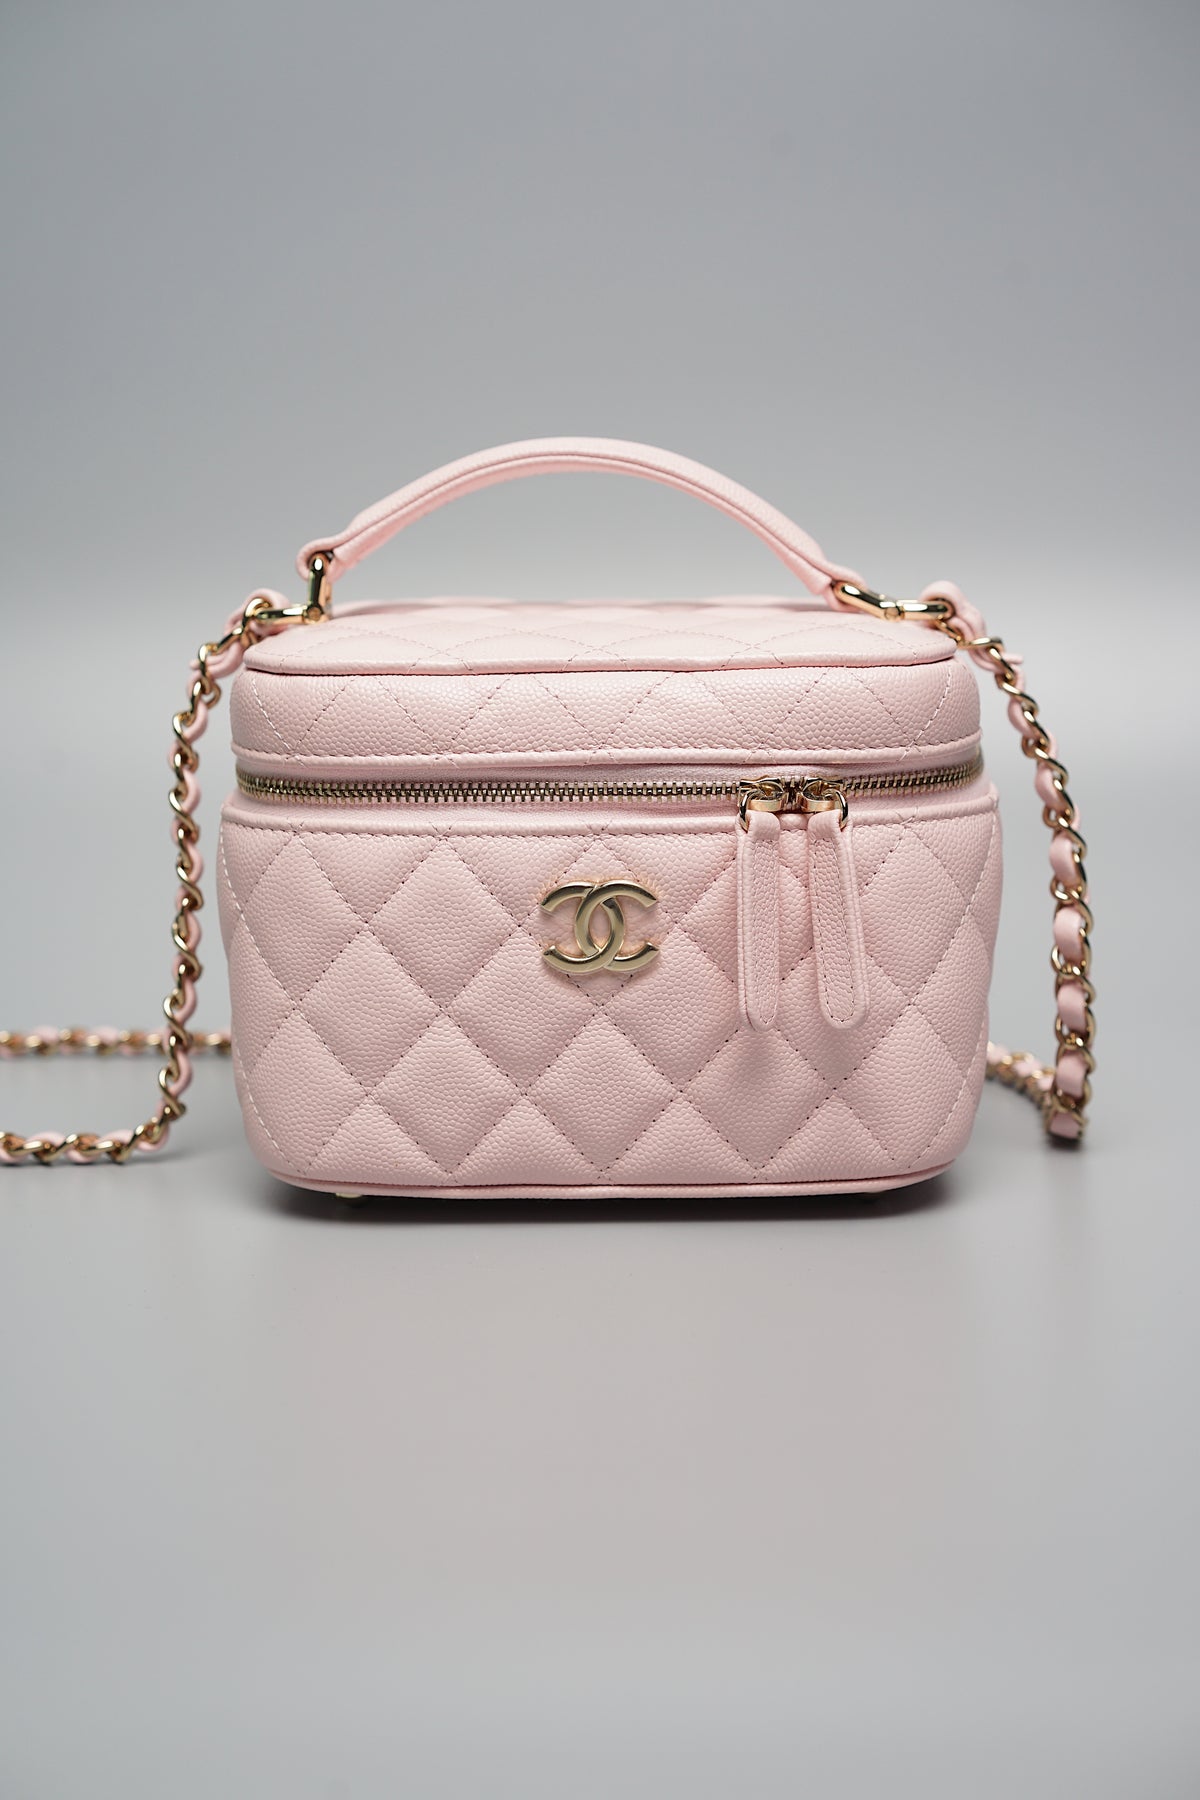 Chanel Pink Caviar Vanity Case with Top Handle (Brand New)– orangeporter